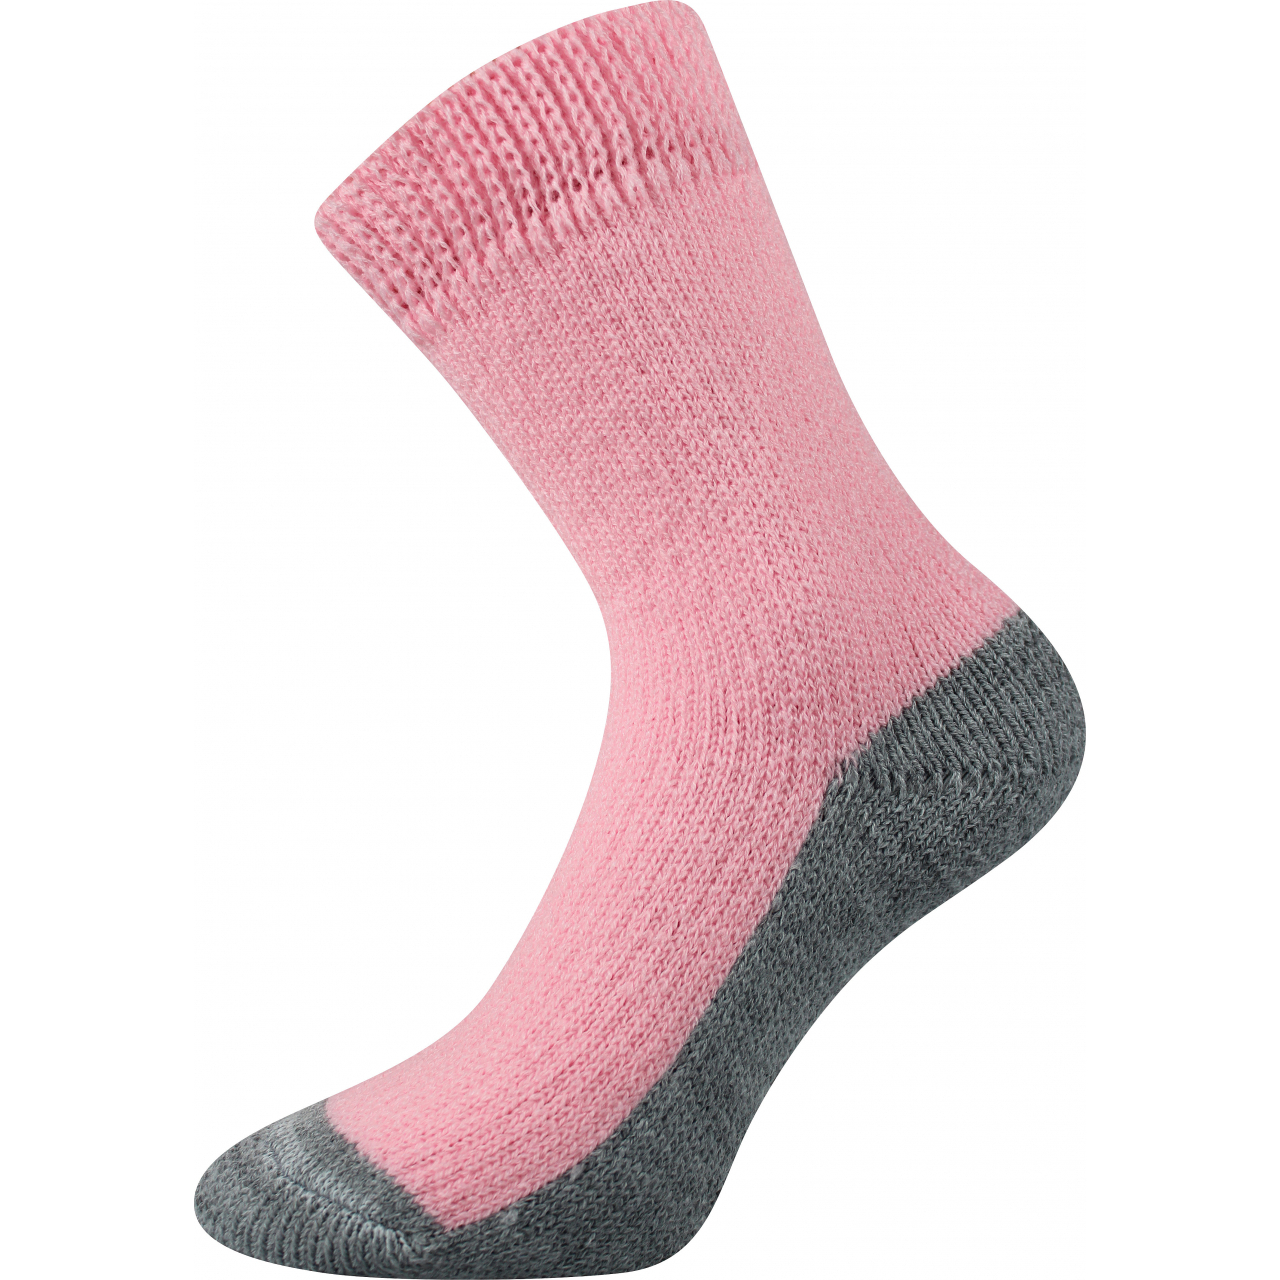 Ponožky unisex Boma Spací - světle růžové, 35-38